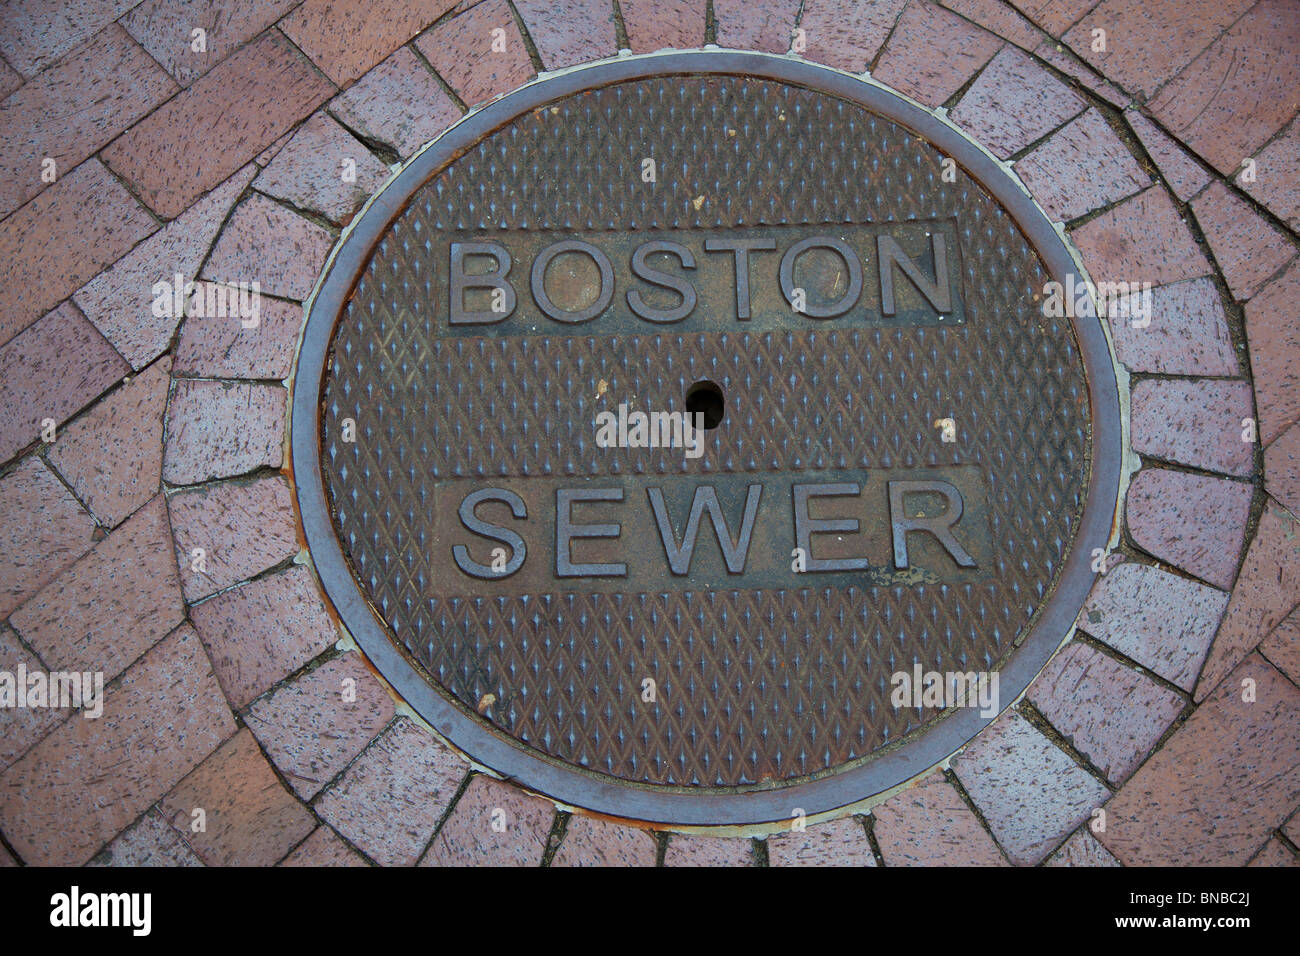 Boston, Massachusetts - einen Kanaldeckel auf der Boston-Kanalisation. Stockfoto